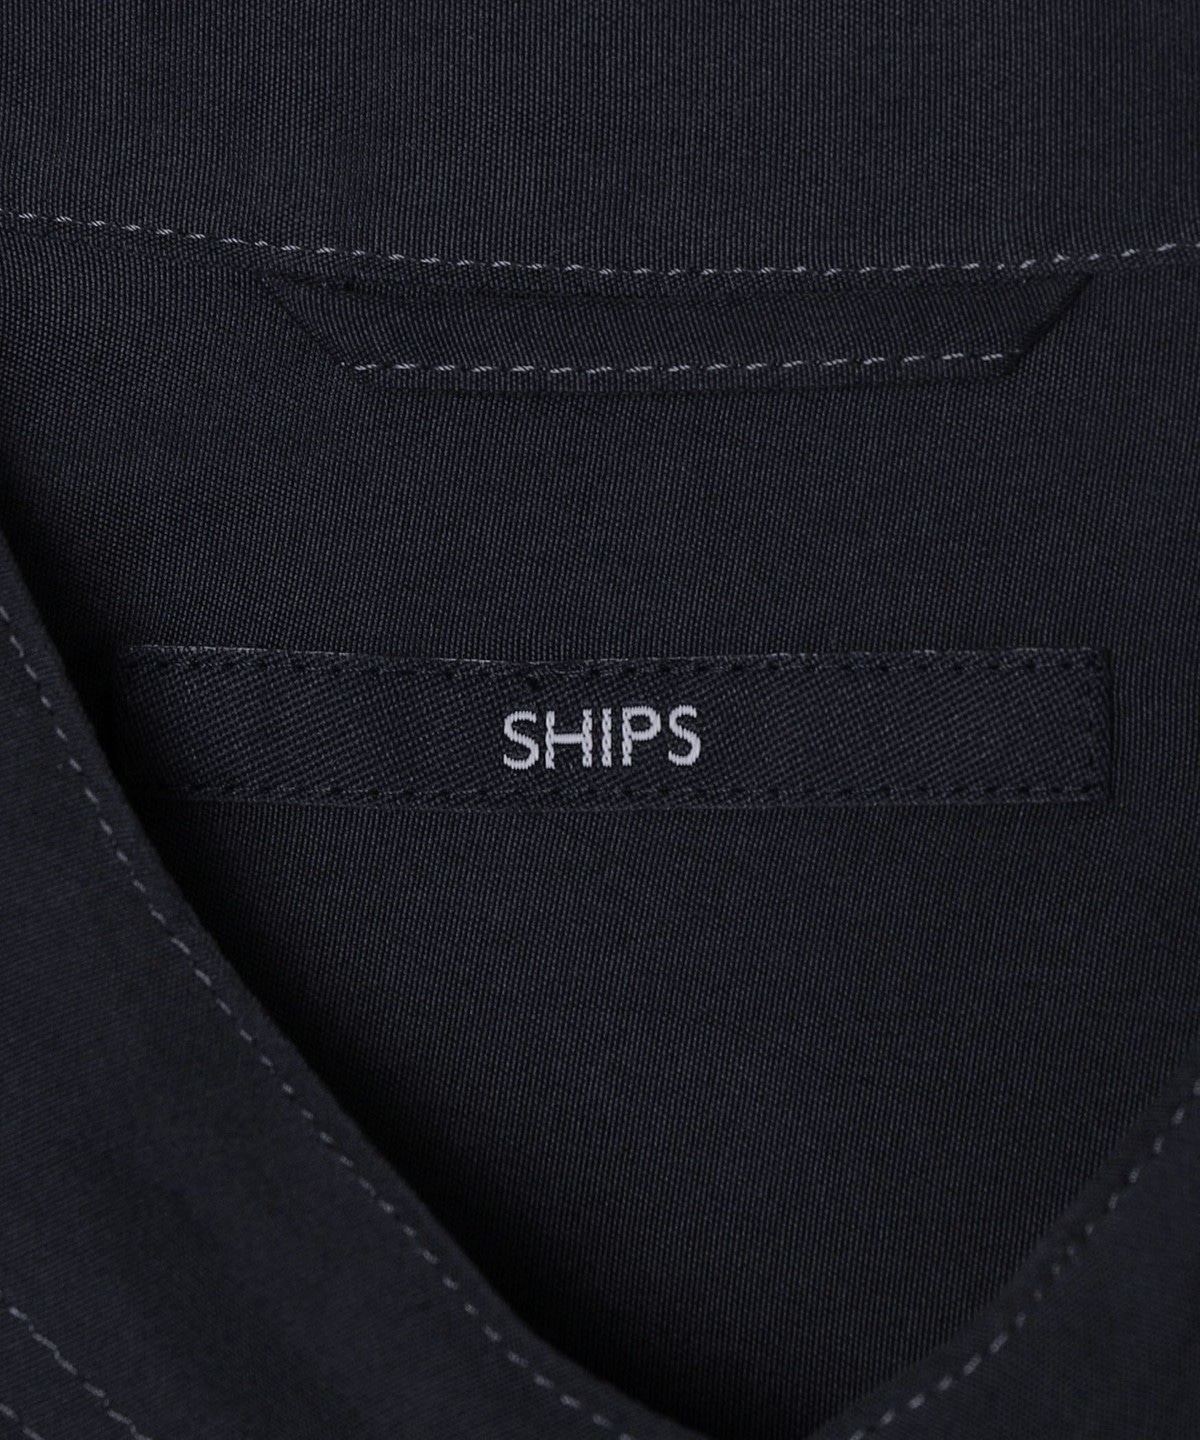 SHIPS: パウダリータッチ シルク リラックス バンドカラーシャツ